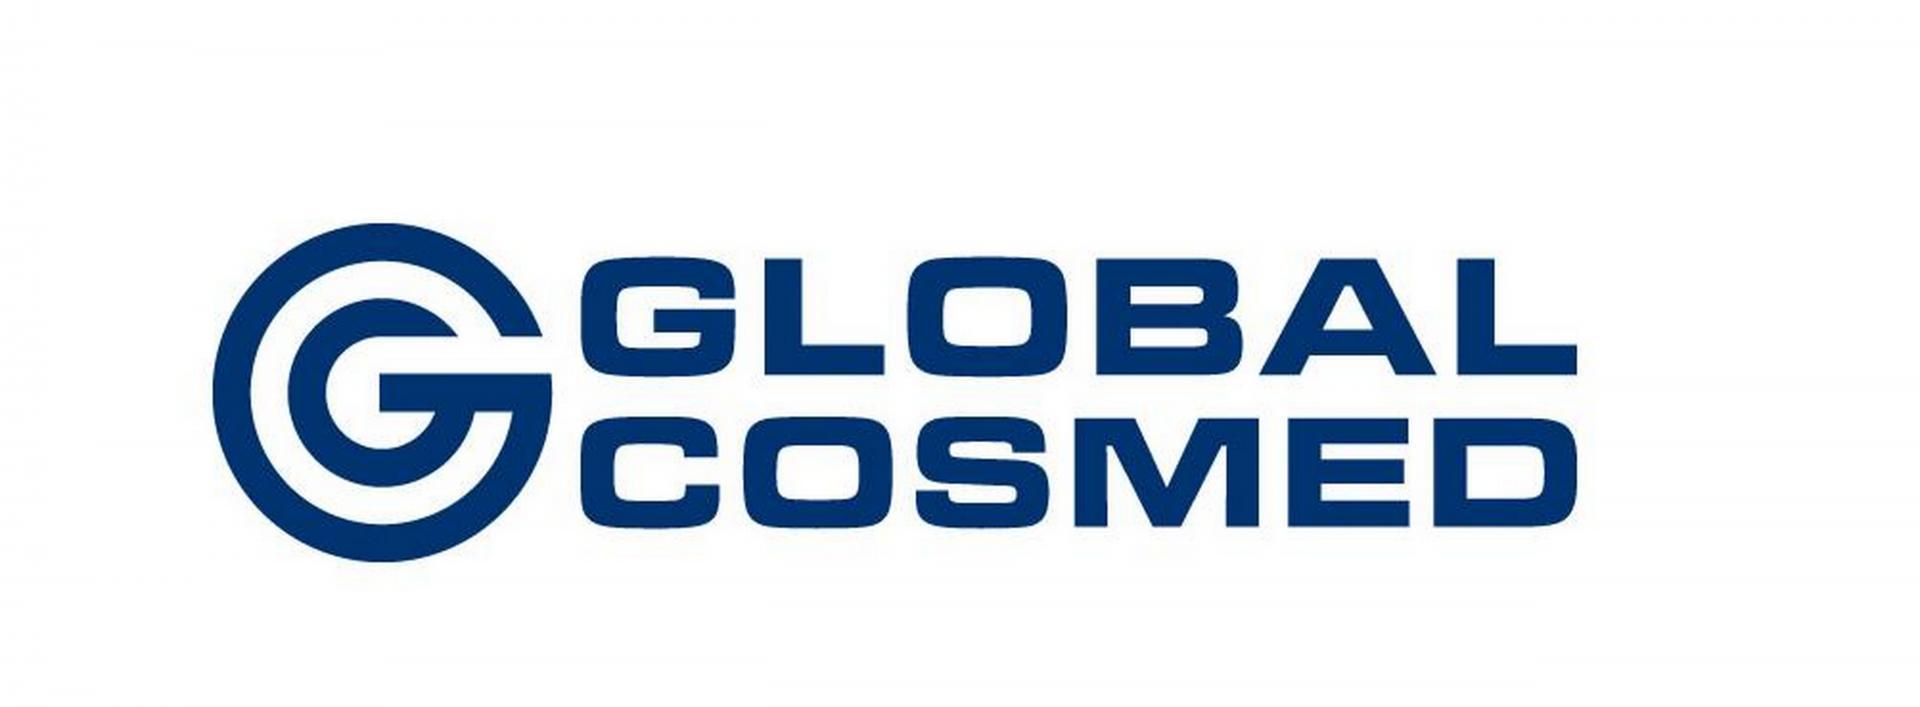 Global Cosmed publikuje wyniki finansowe Q1 2022 – utrzymanie poziomu przychodów i kontynuacja strategii wzrostu